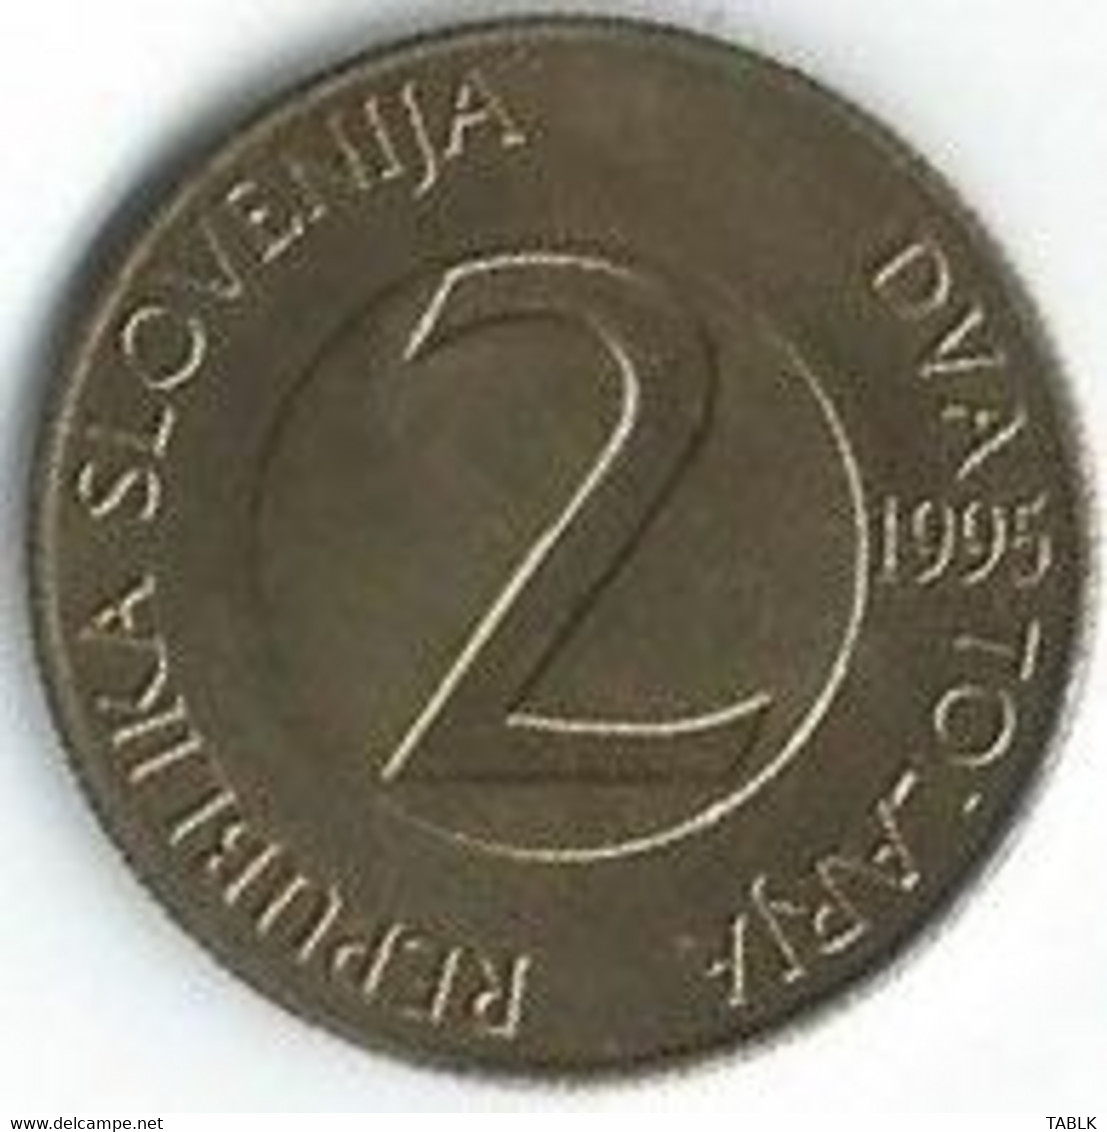 MM632 - SLOVENIË - SLOVENIA - 2 TALLERI 1995 - Slovénie